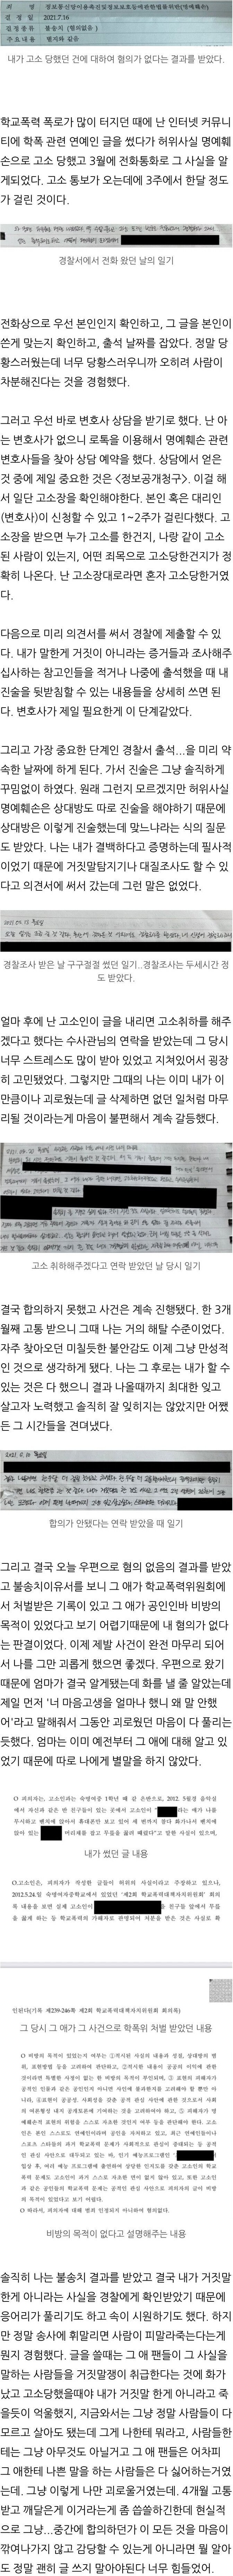 소혜 학폭 폭로로 고소, 무혐의 받은 사람 후기 + 소혜 소속사 입장문 - 꾸르